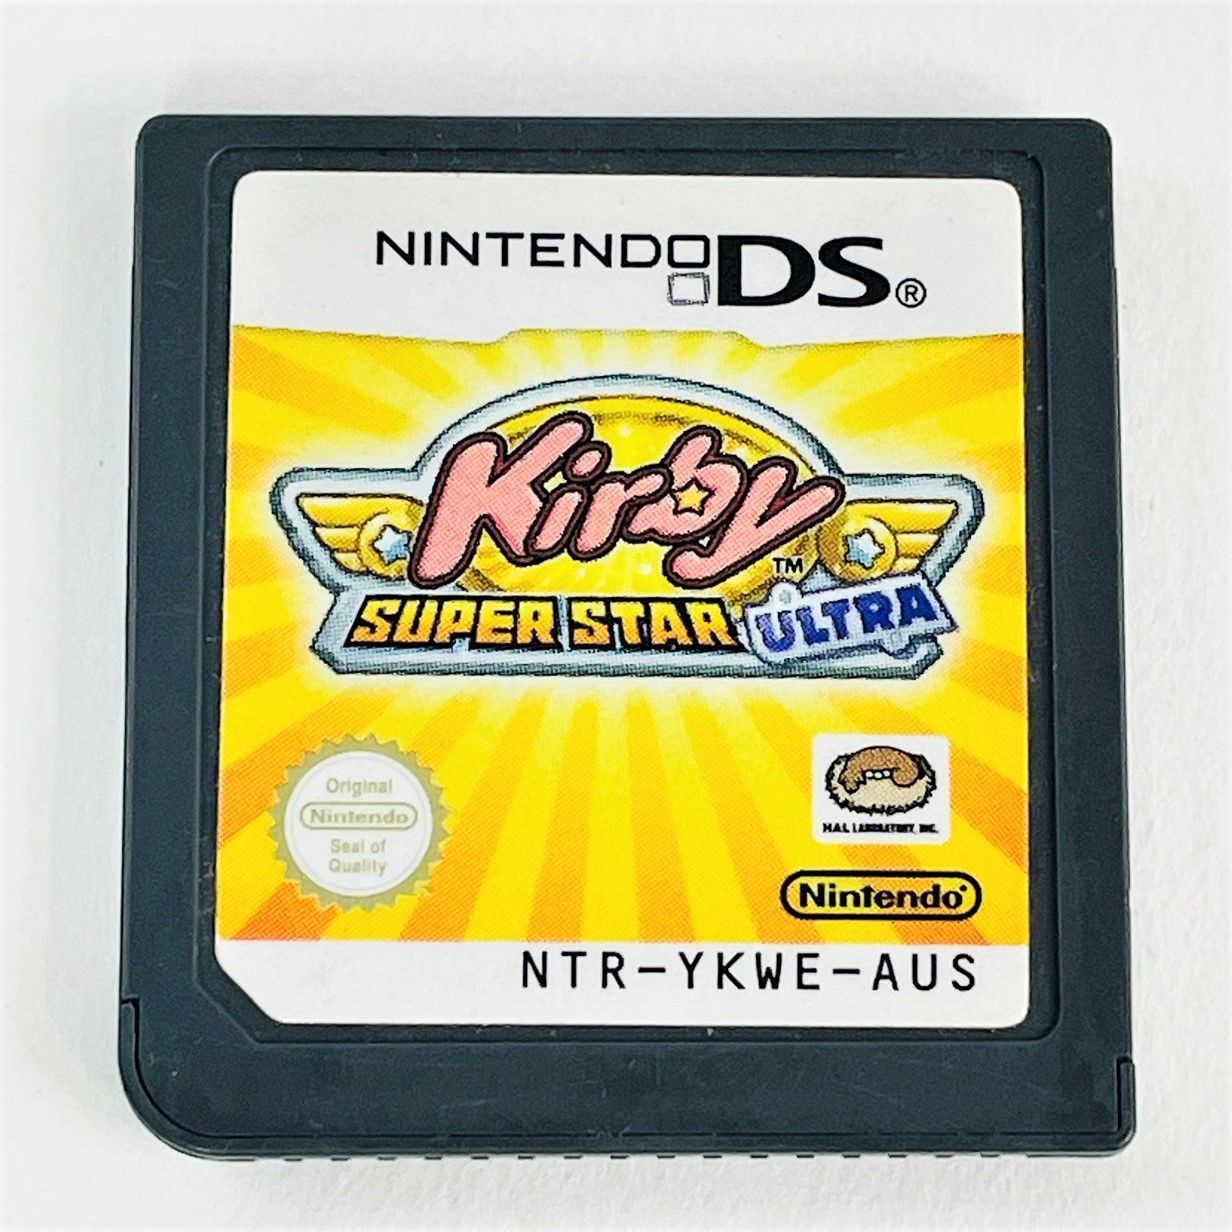 ◇【動作OK】海外版 NINTENDO DS カービィ スーパースター ウルトラ Kirby SUPER STAR ULTRA  NTR-YKWE-AUS ソフト カセット